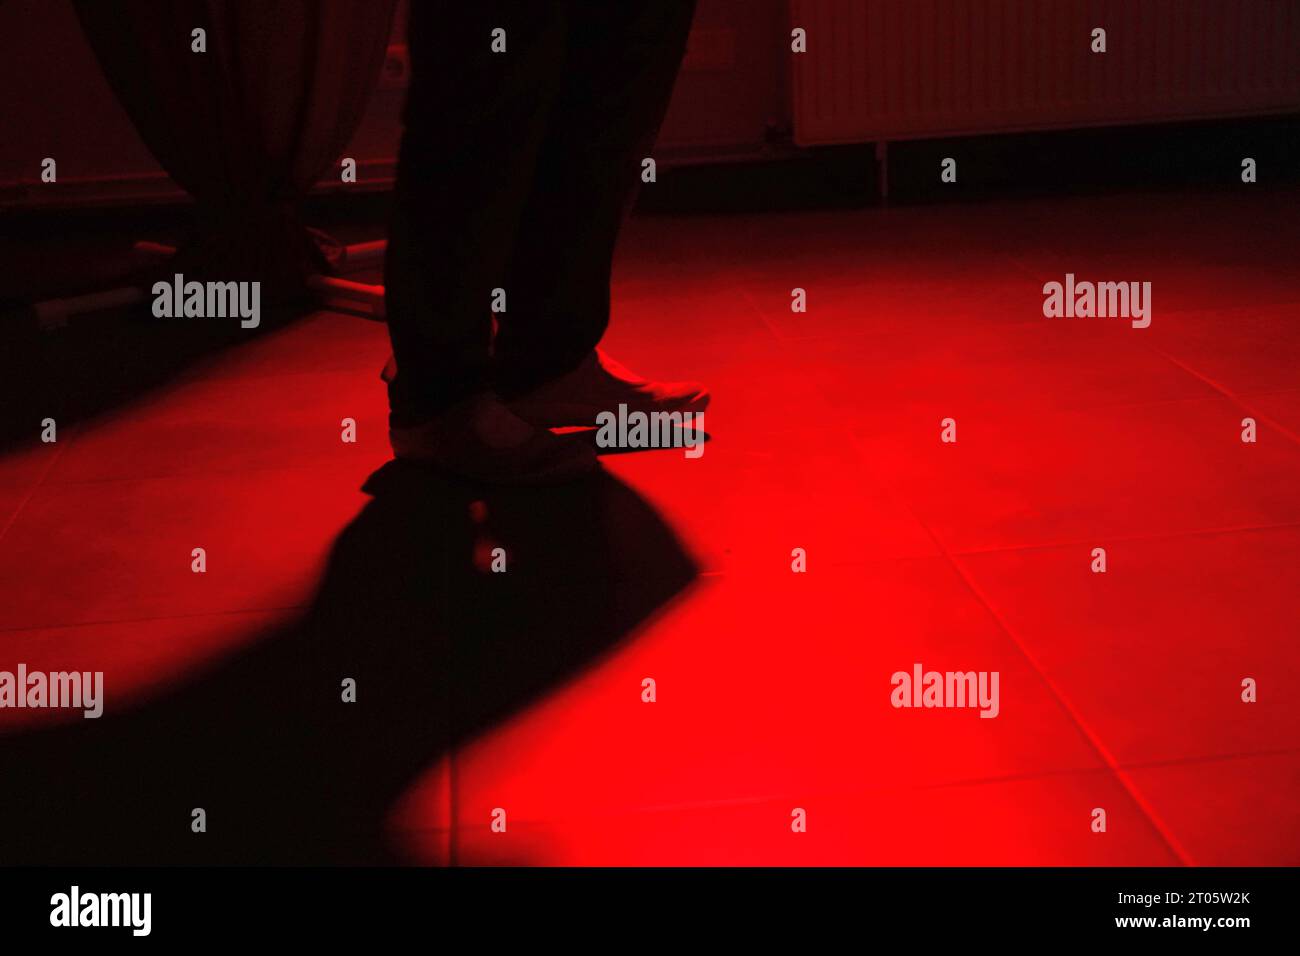 Tanzende Füße bei privater Party in einem Bremer Vereinsheim. *** Ballare piedi a festa privata nella Clubhouse di Brema credito: Imago/Alamy Live News Foto Stock